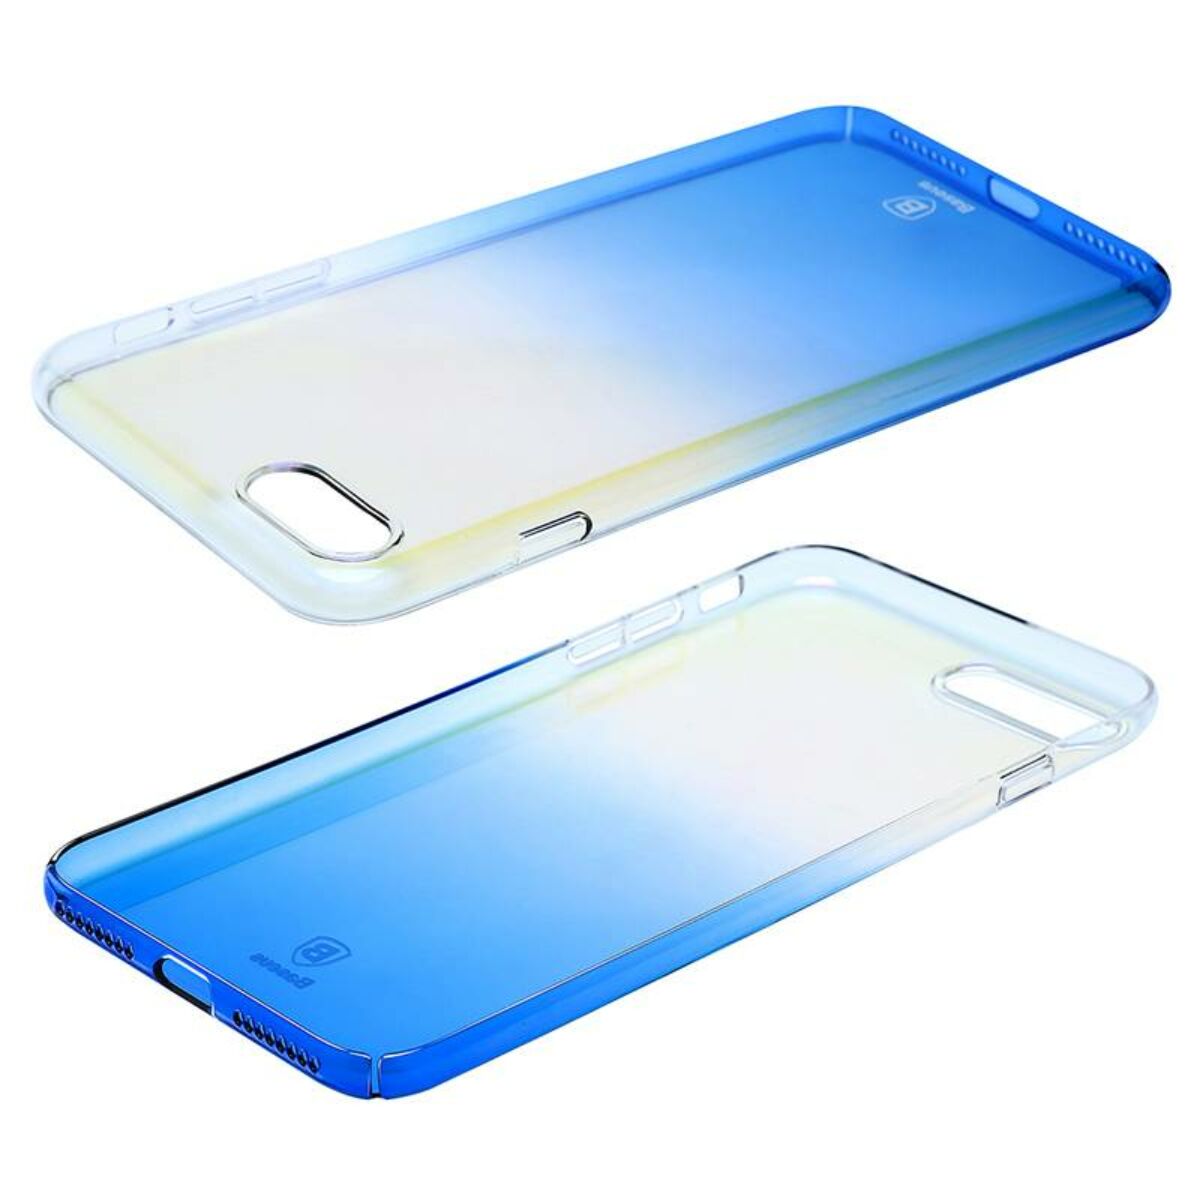 Kép 3/4 - Baseus iPhone 8/7 Plus tok, Glaze, kék (WIAPIPH7P-GC03)